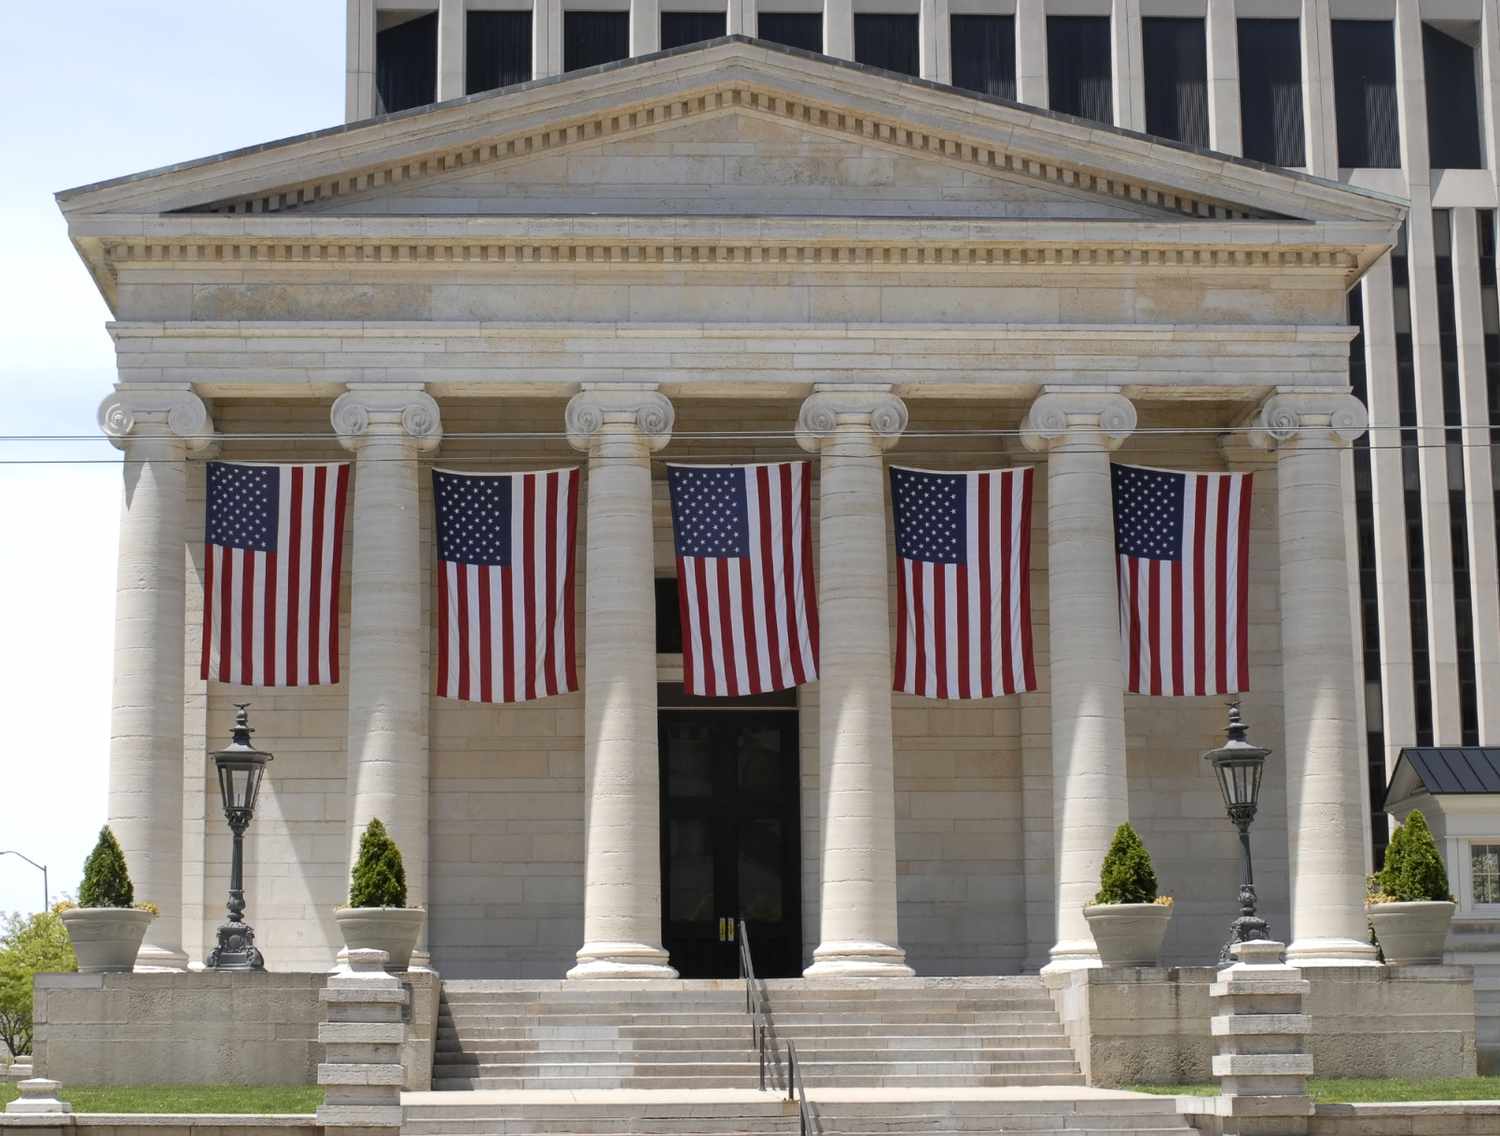 Palacio de justicia de estilo renacimiento griego con banderas americanas.